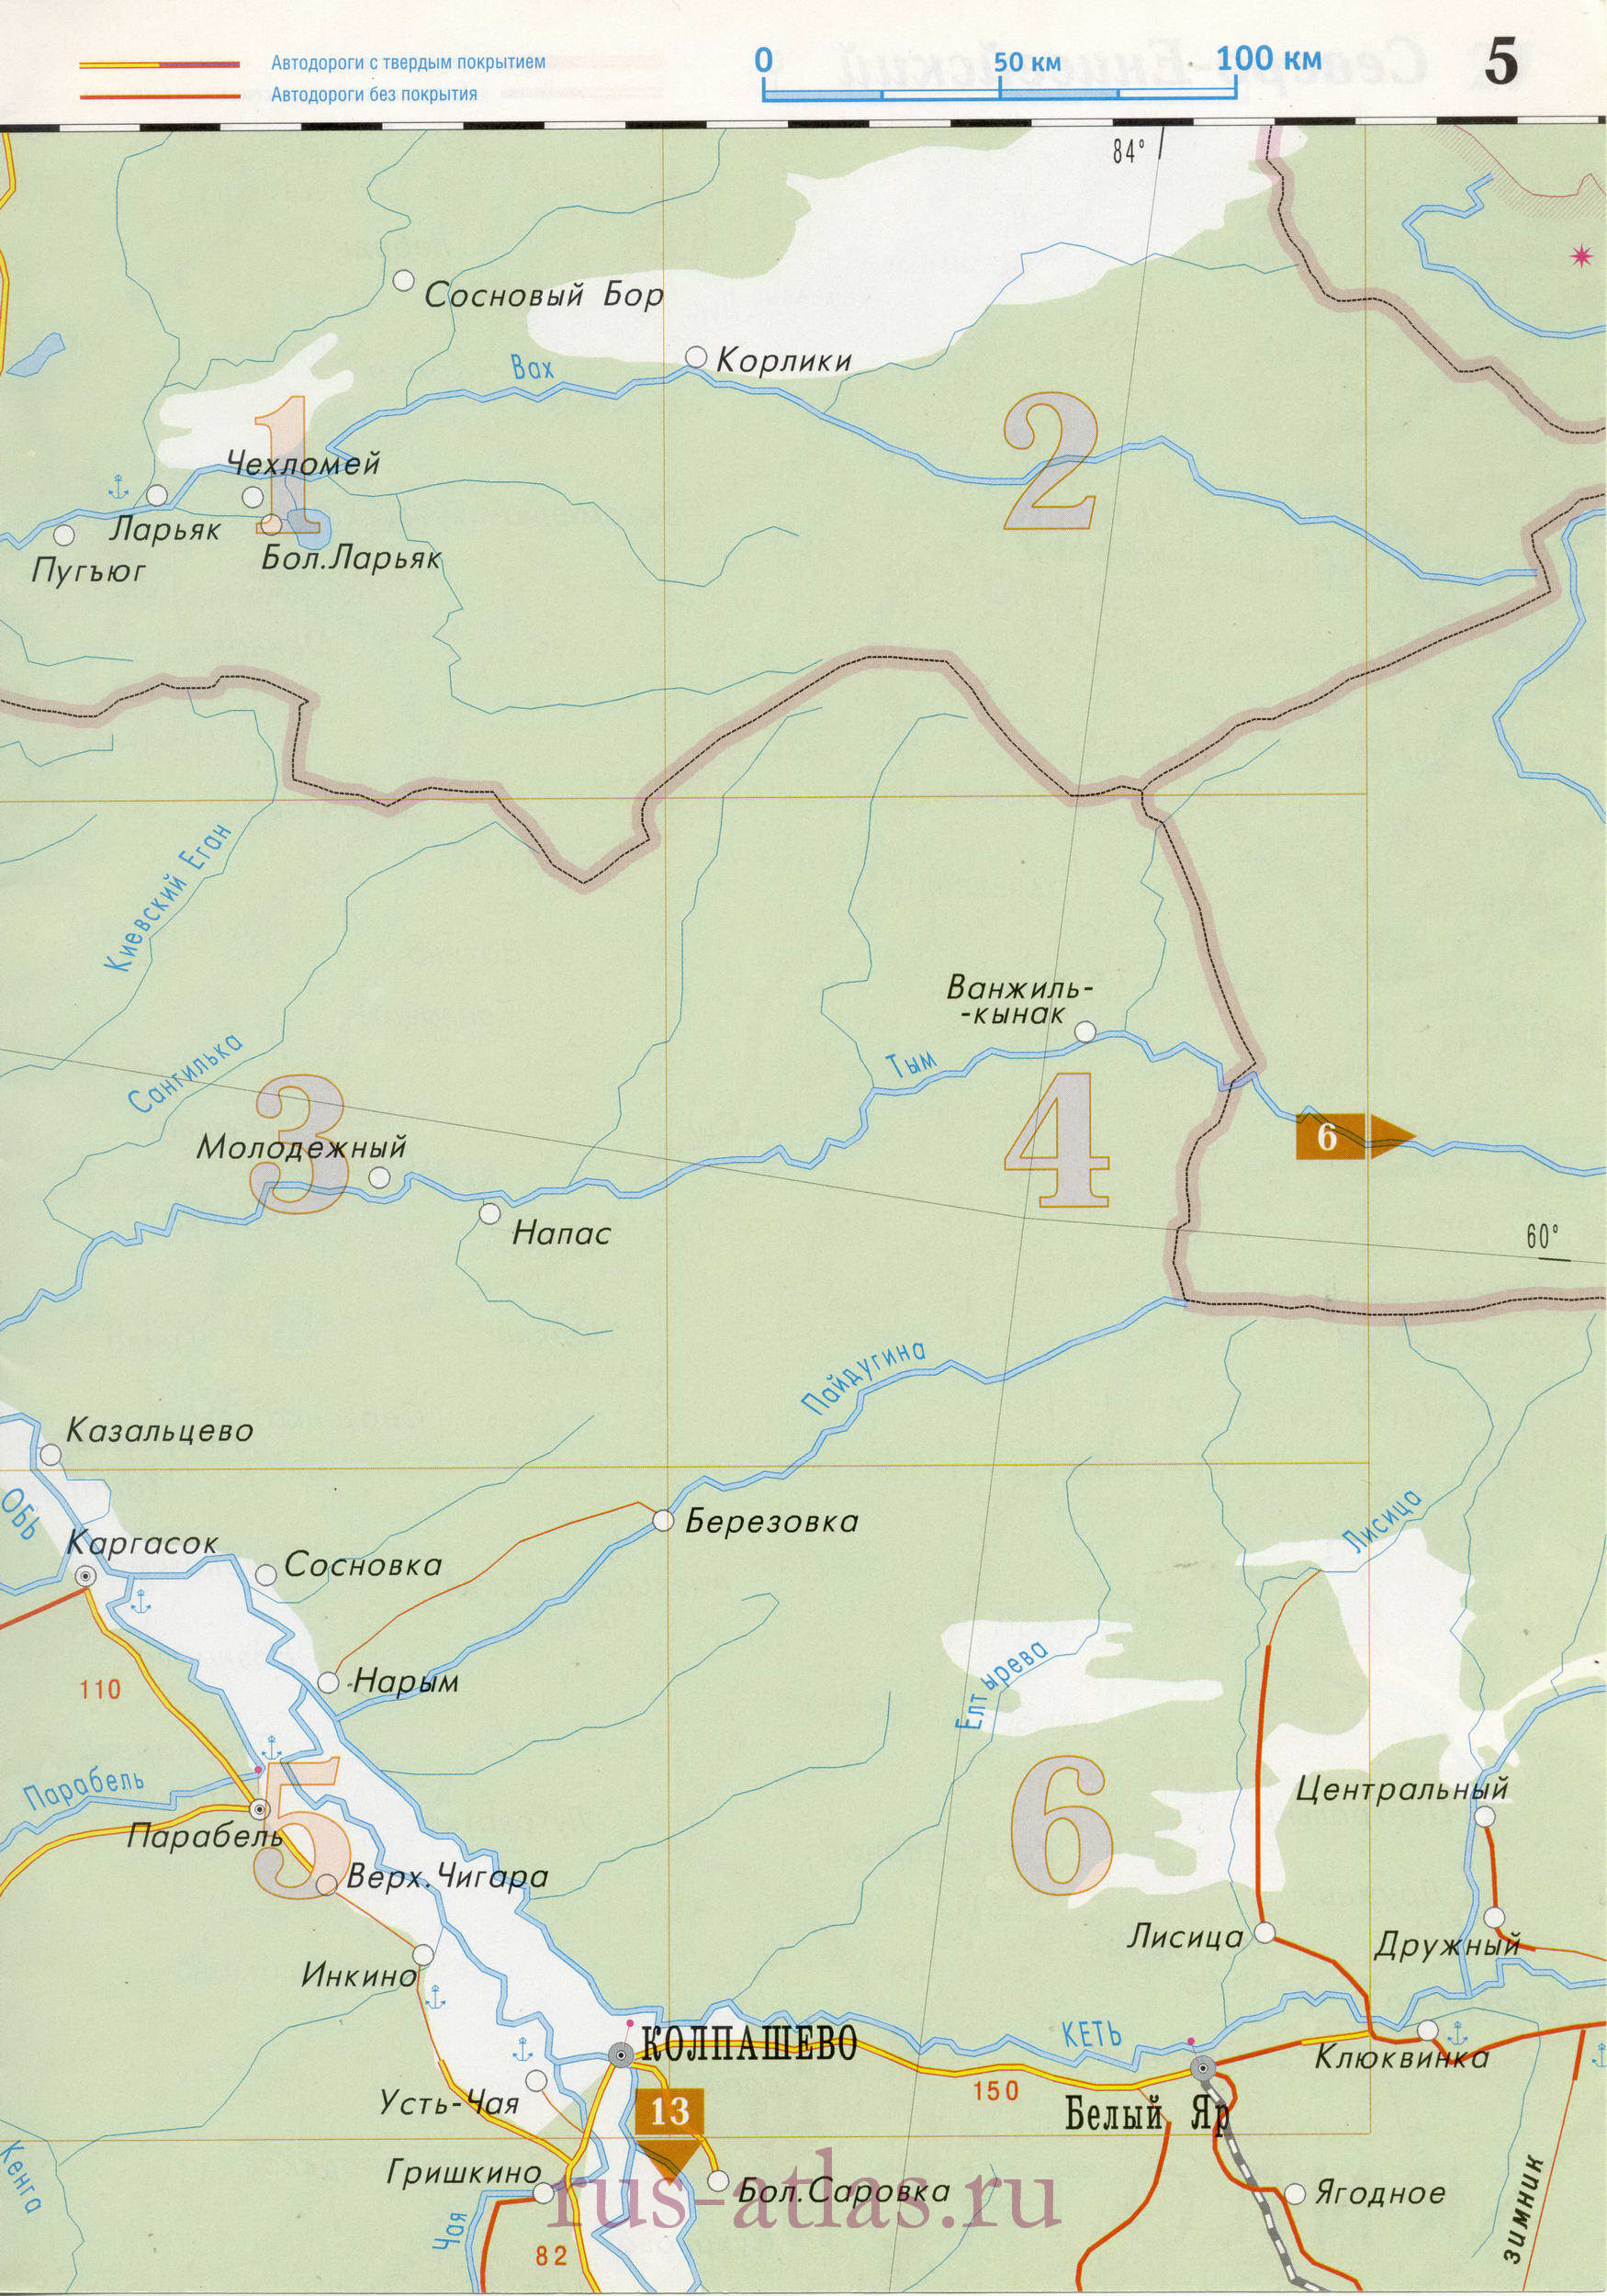 Дорожная карта Томской области и соседних регионов , B0 - 